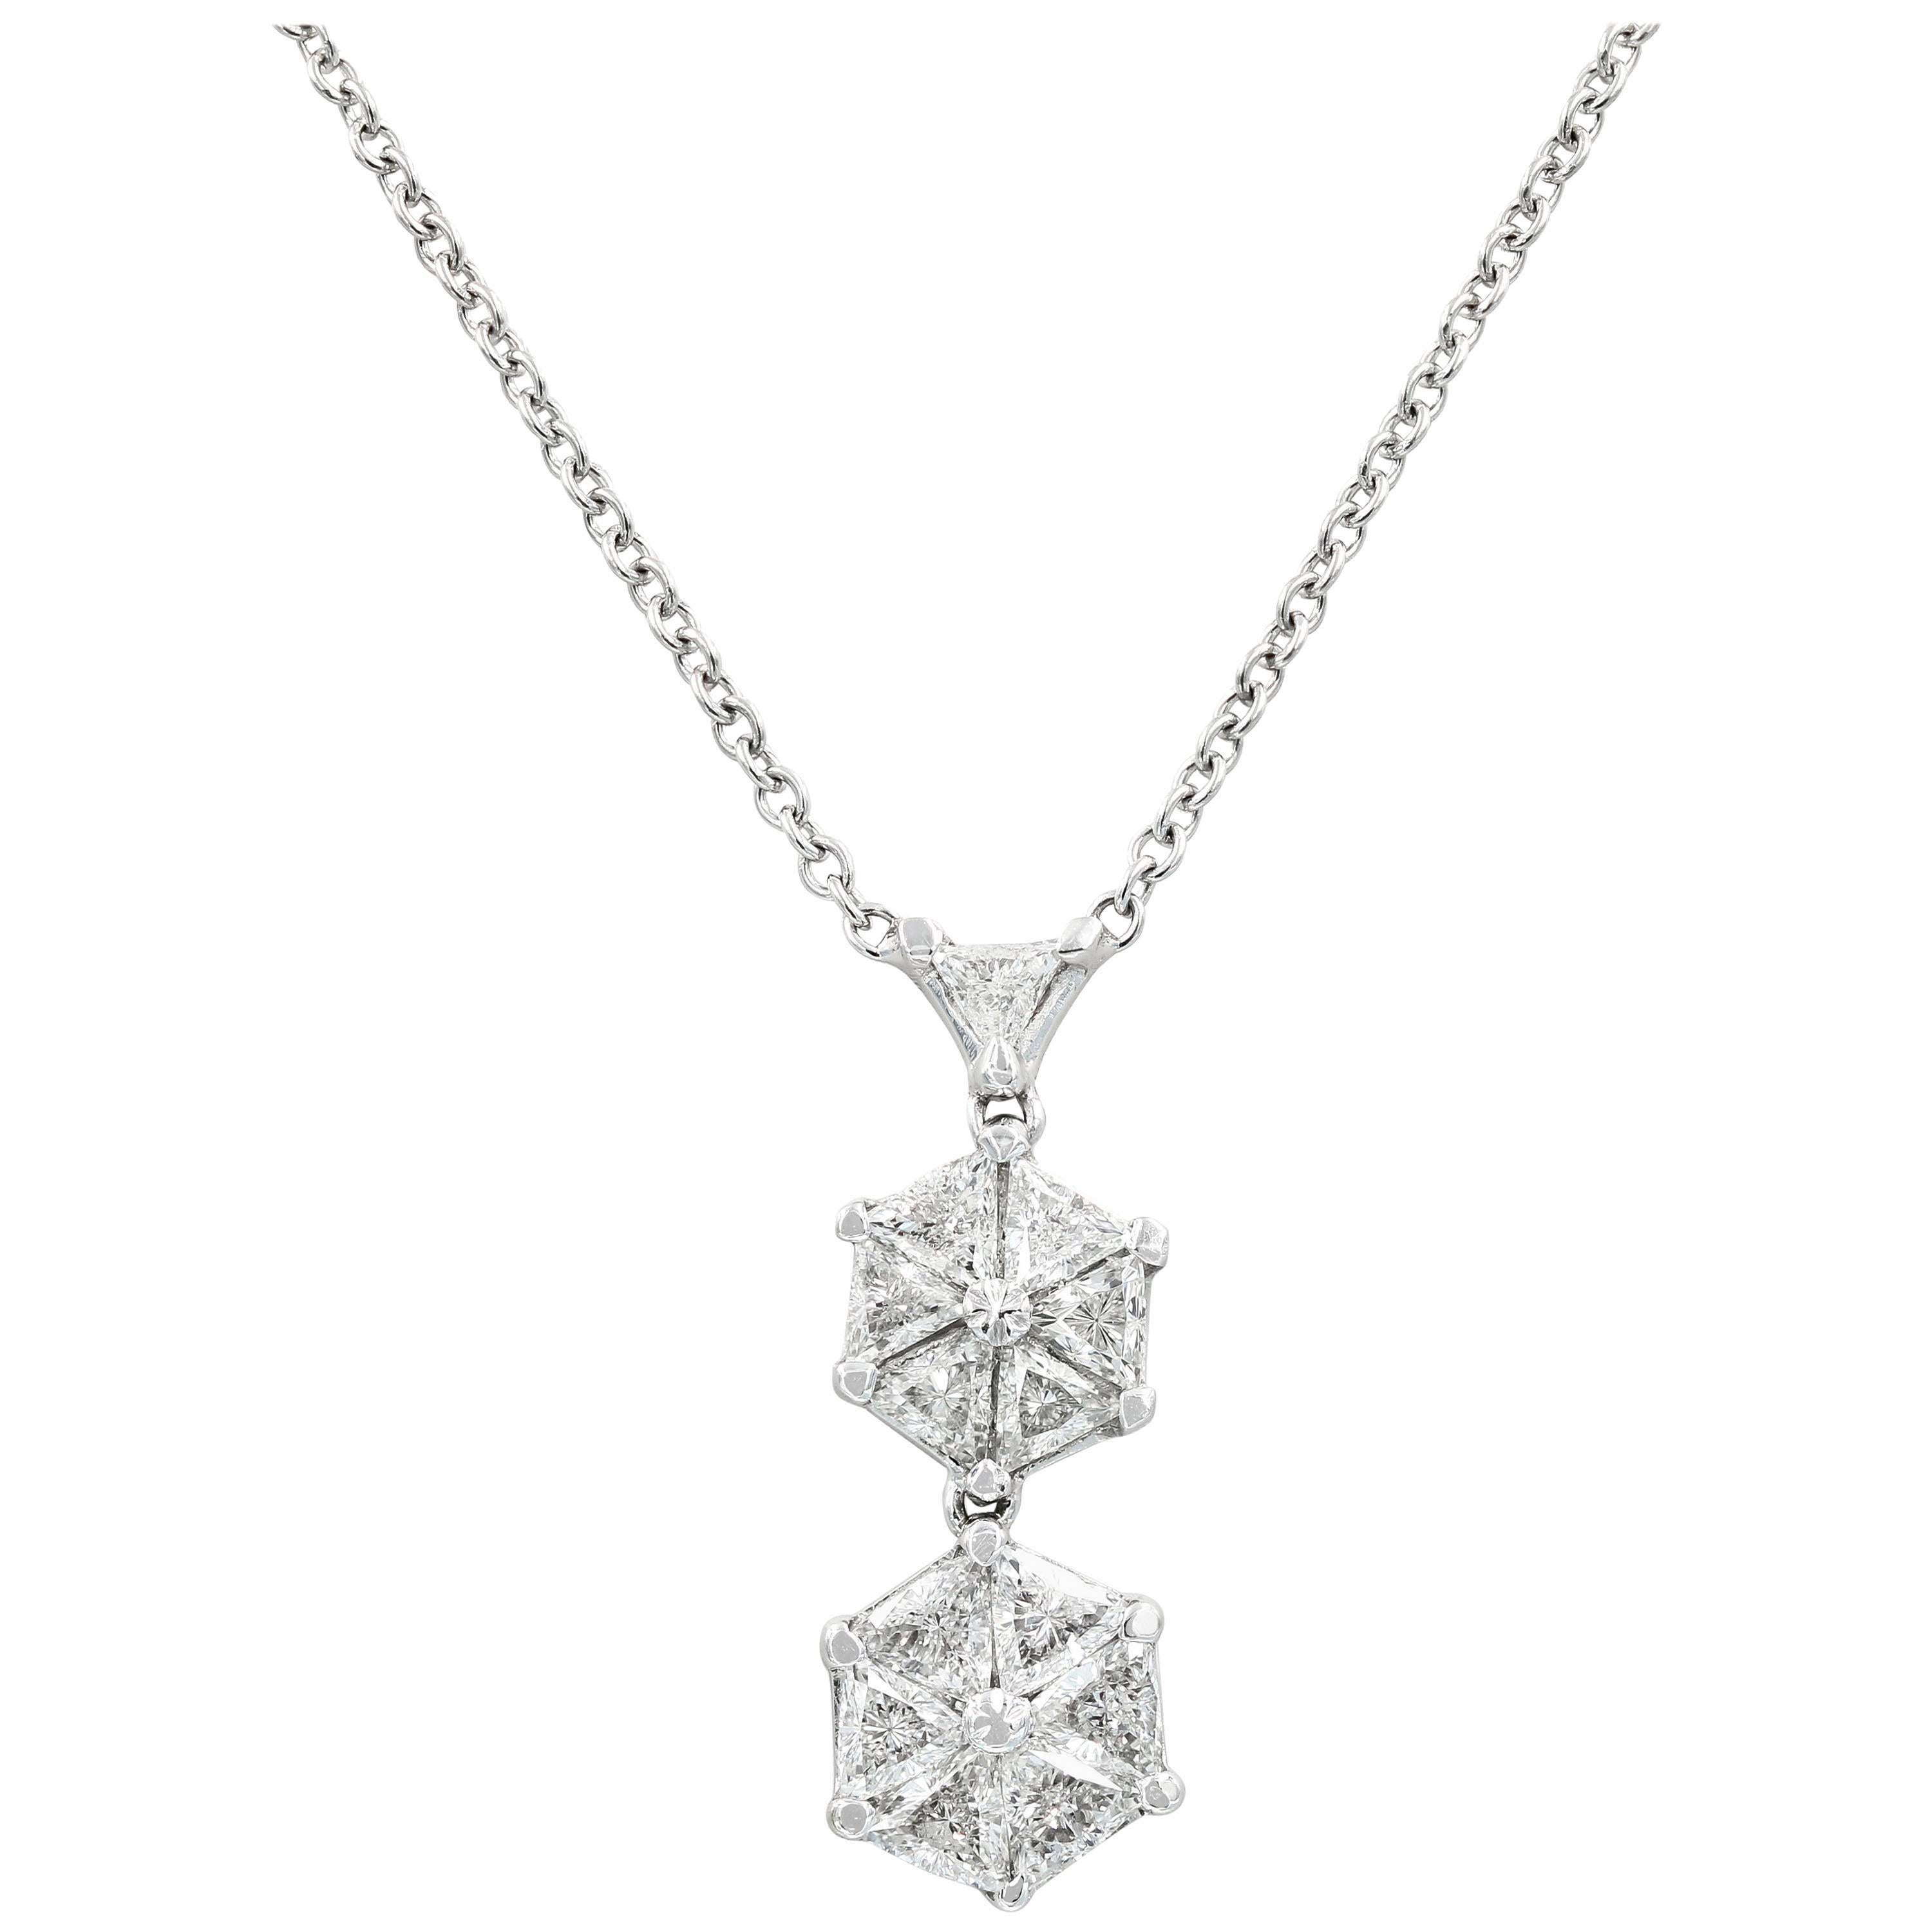 Lester Lampert VoiLLa Trilliant Diamond and Platinum Pendant